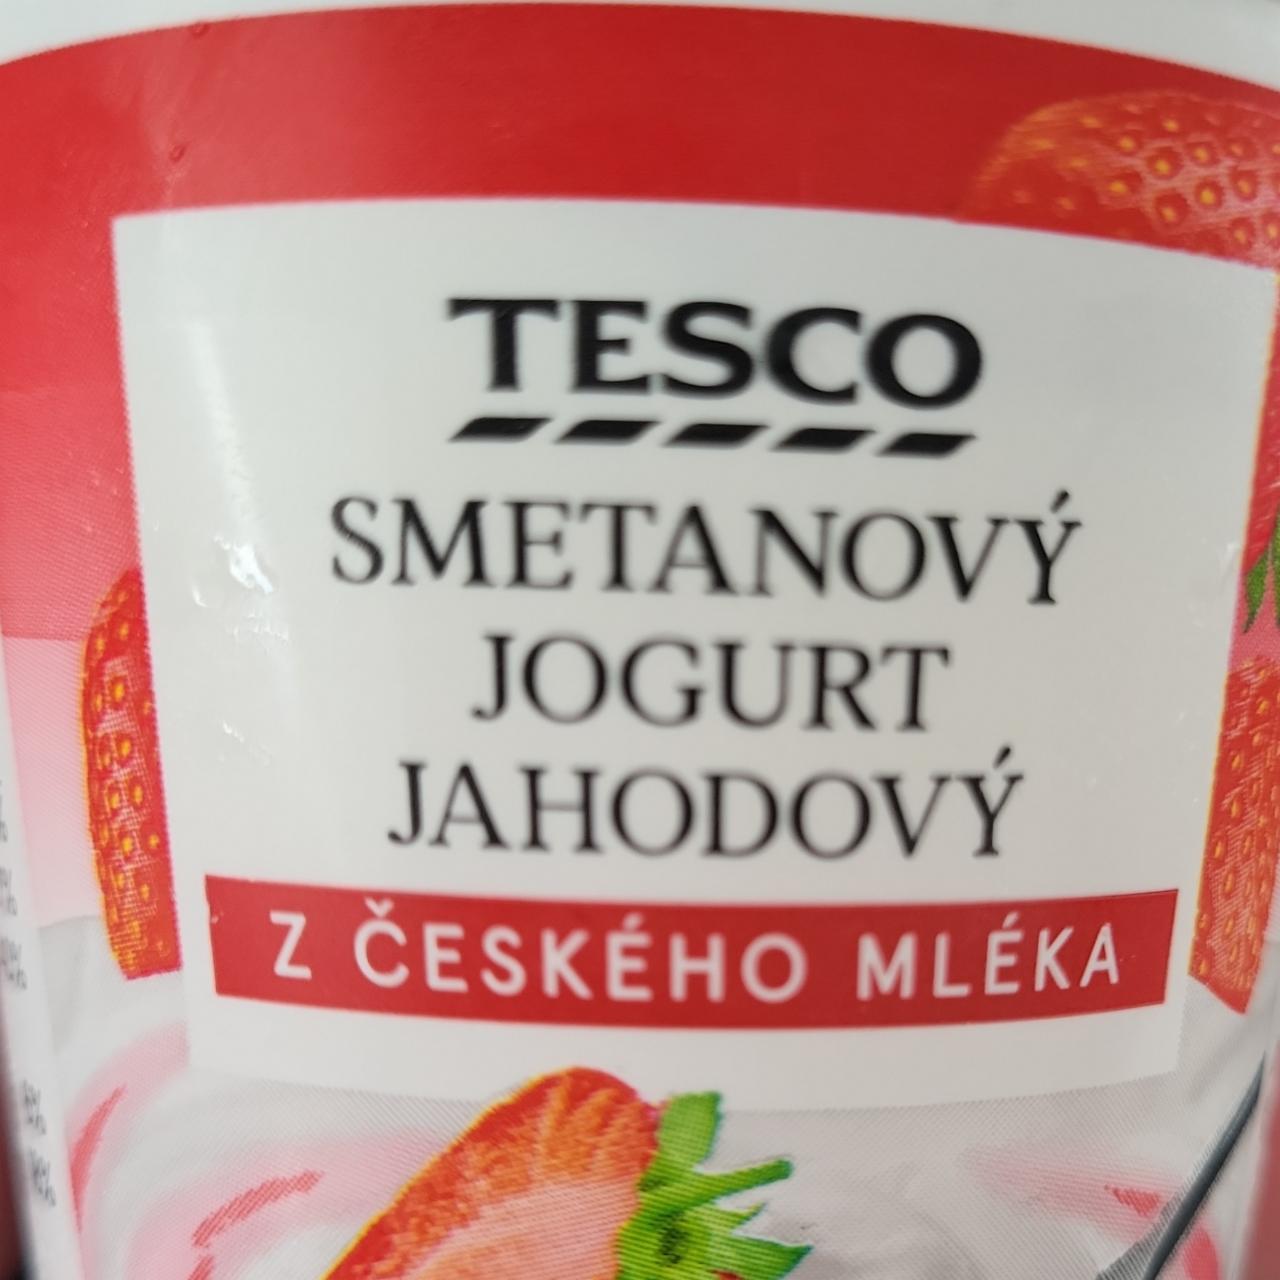 Fotografie - Tesco smetanový jogurt jahodový